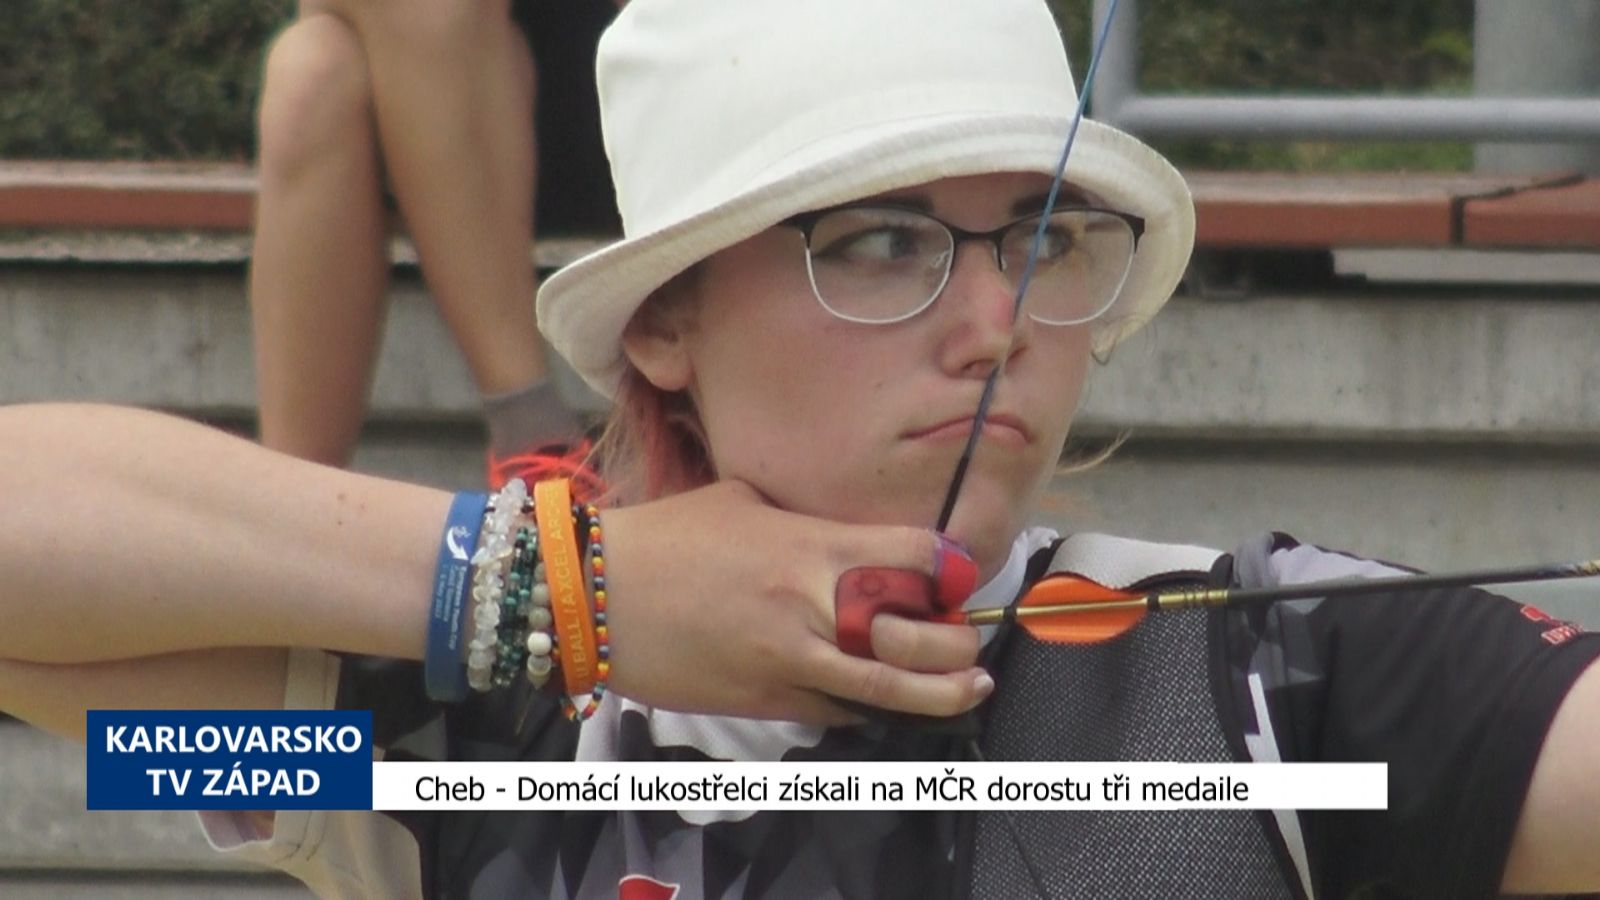 Cheb: Domácí lukostřelci získali na MČR dorostu tři medaile (TV Západ)